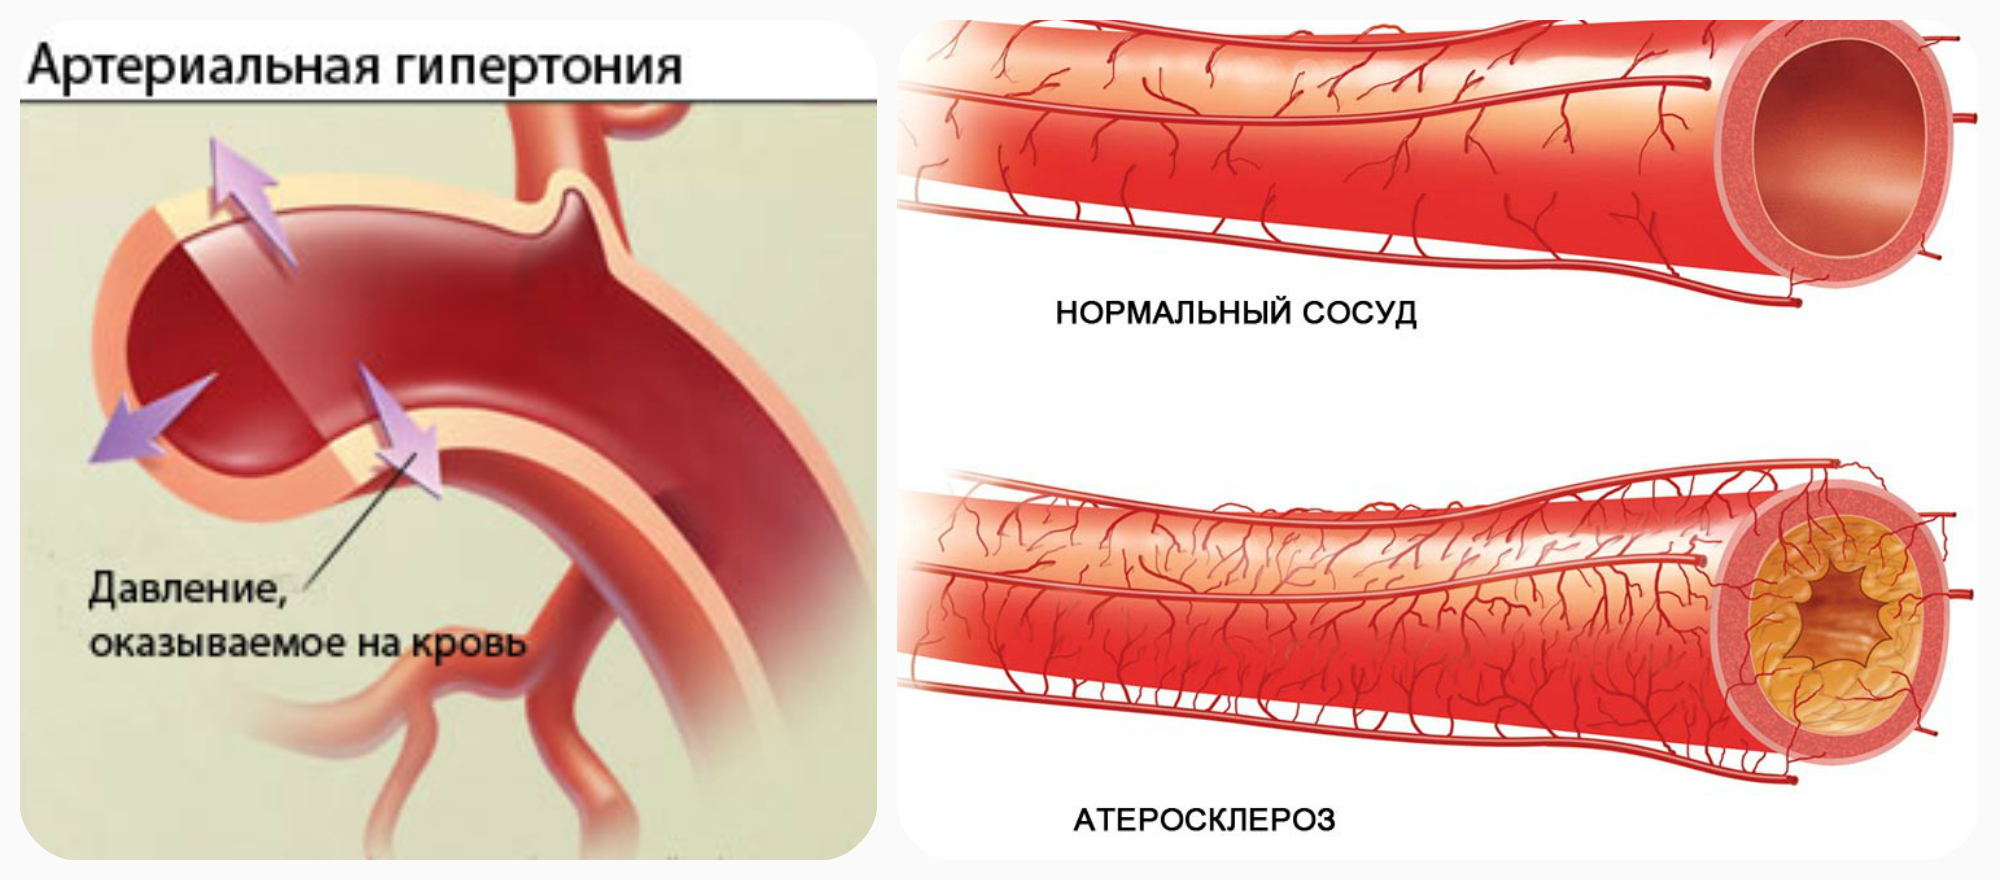 Артериальная гипертензия причина атеросклероза и тромбоза — атеротромбоза